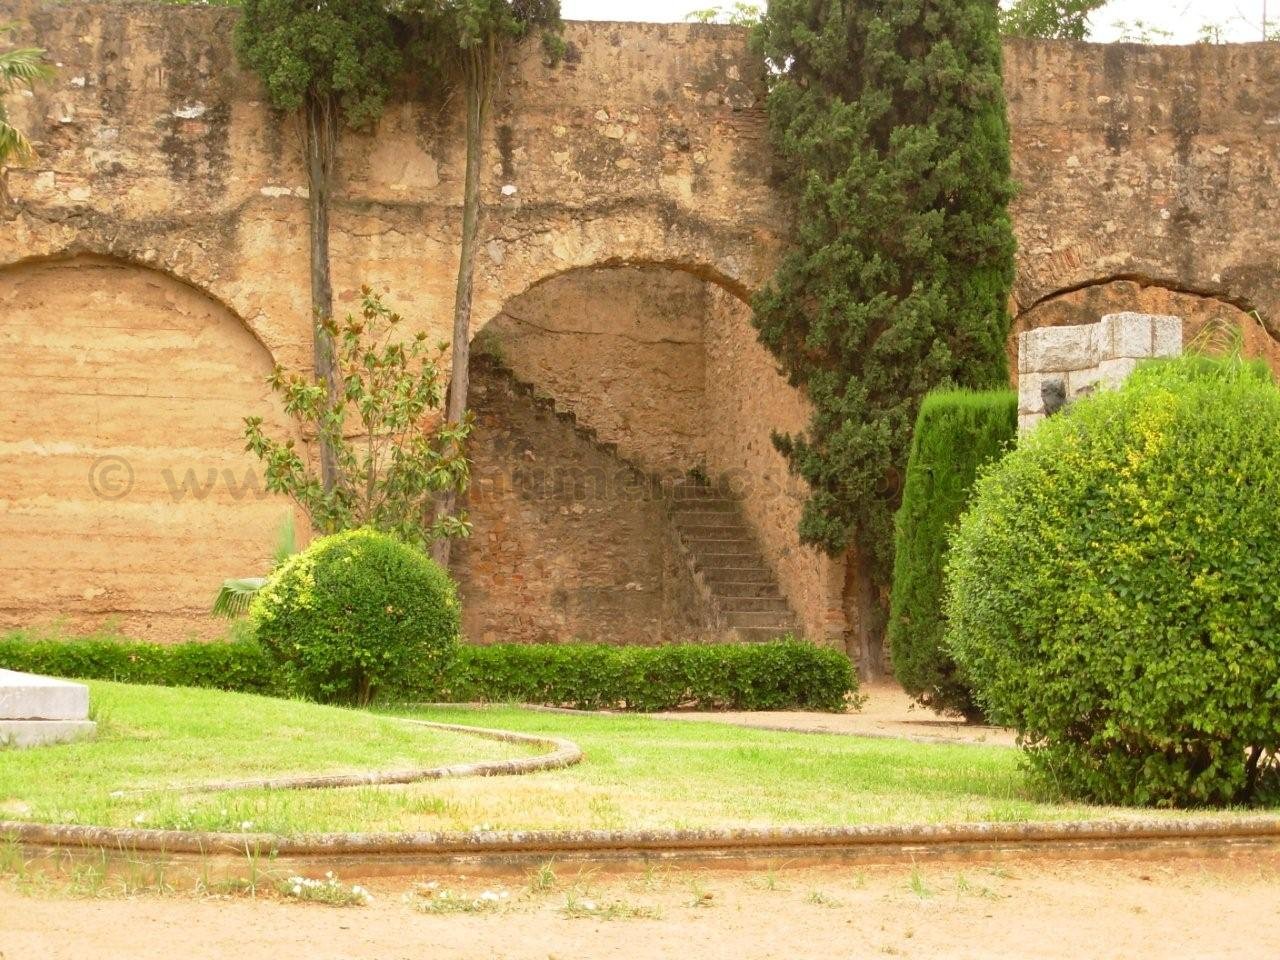 Baluarte de la Trinidad (Badajoz)